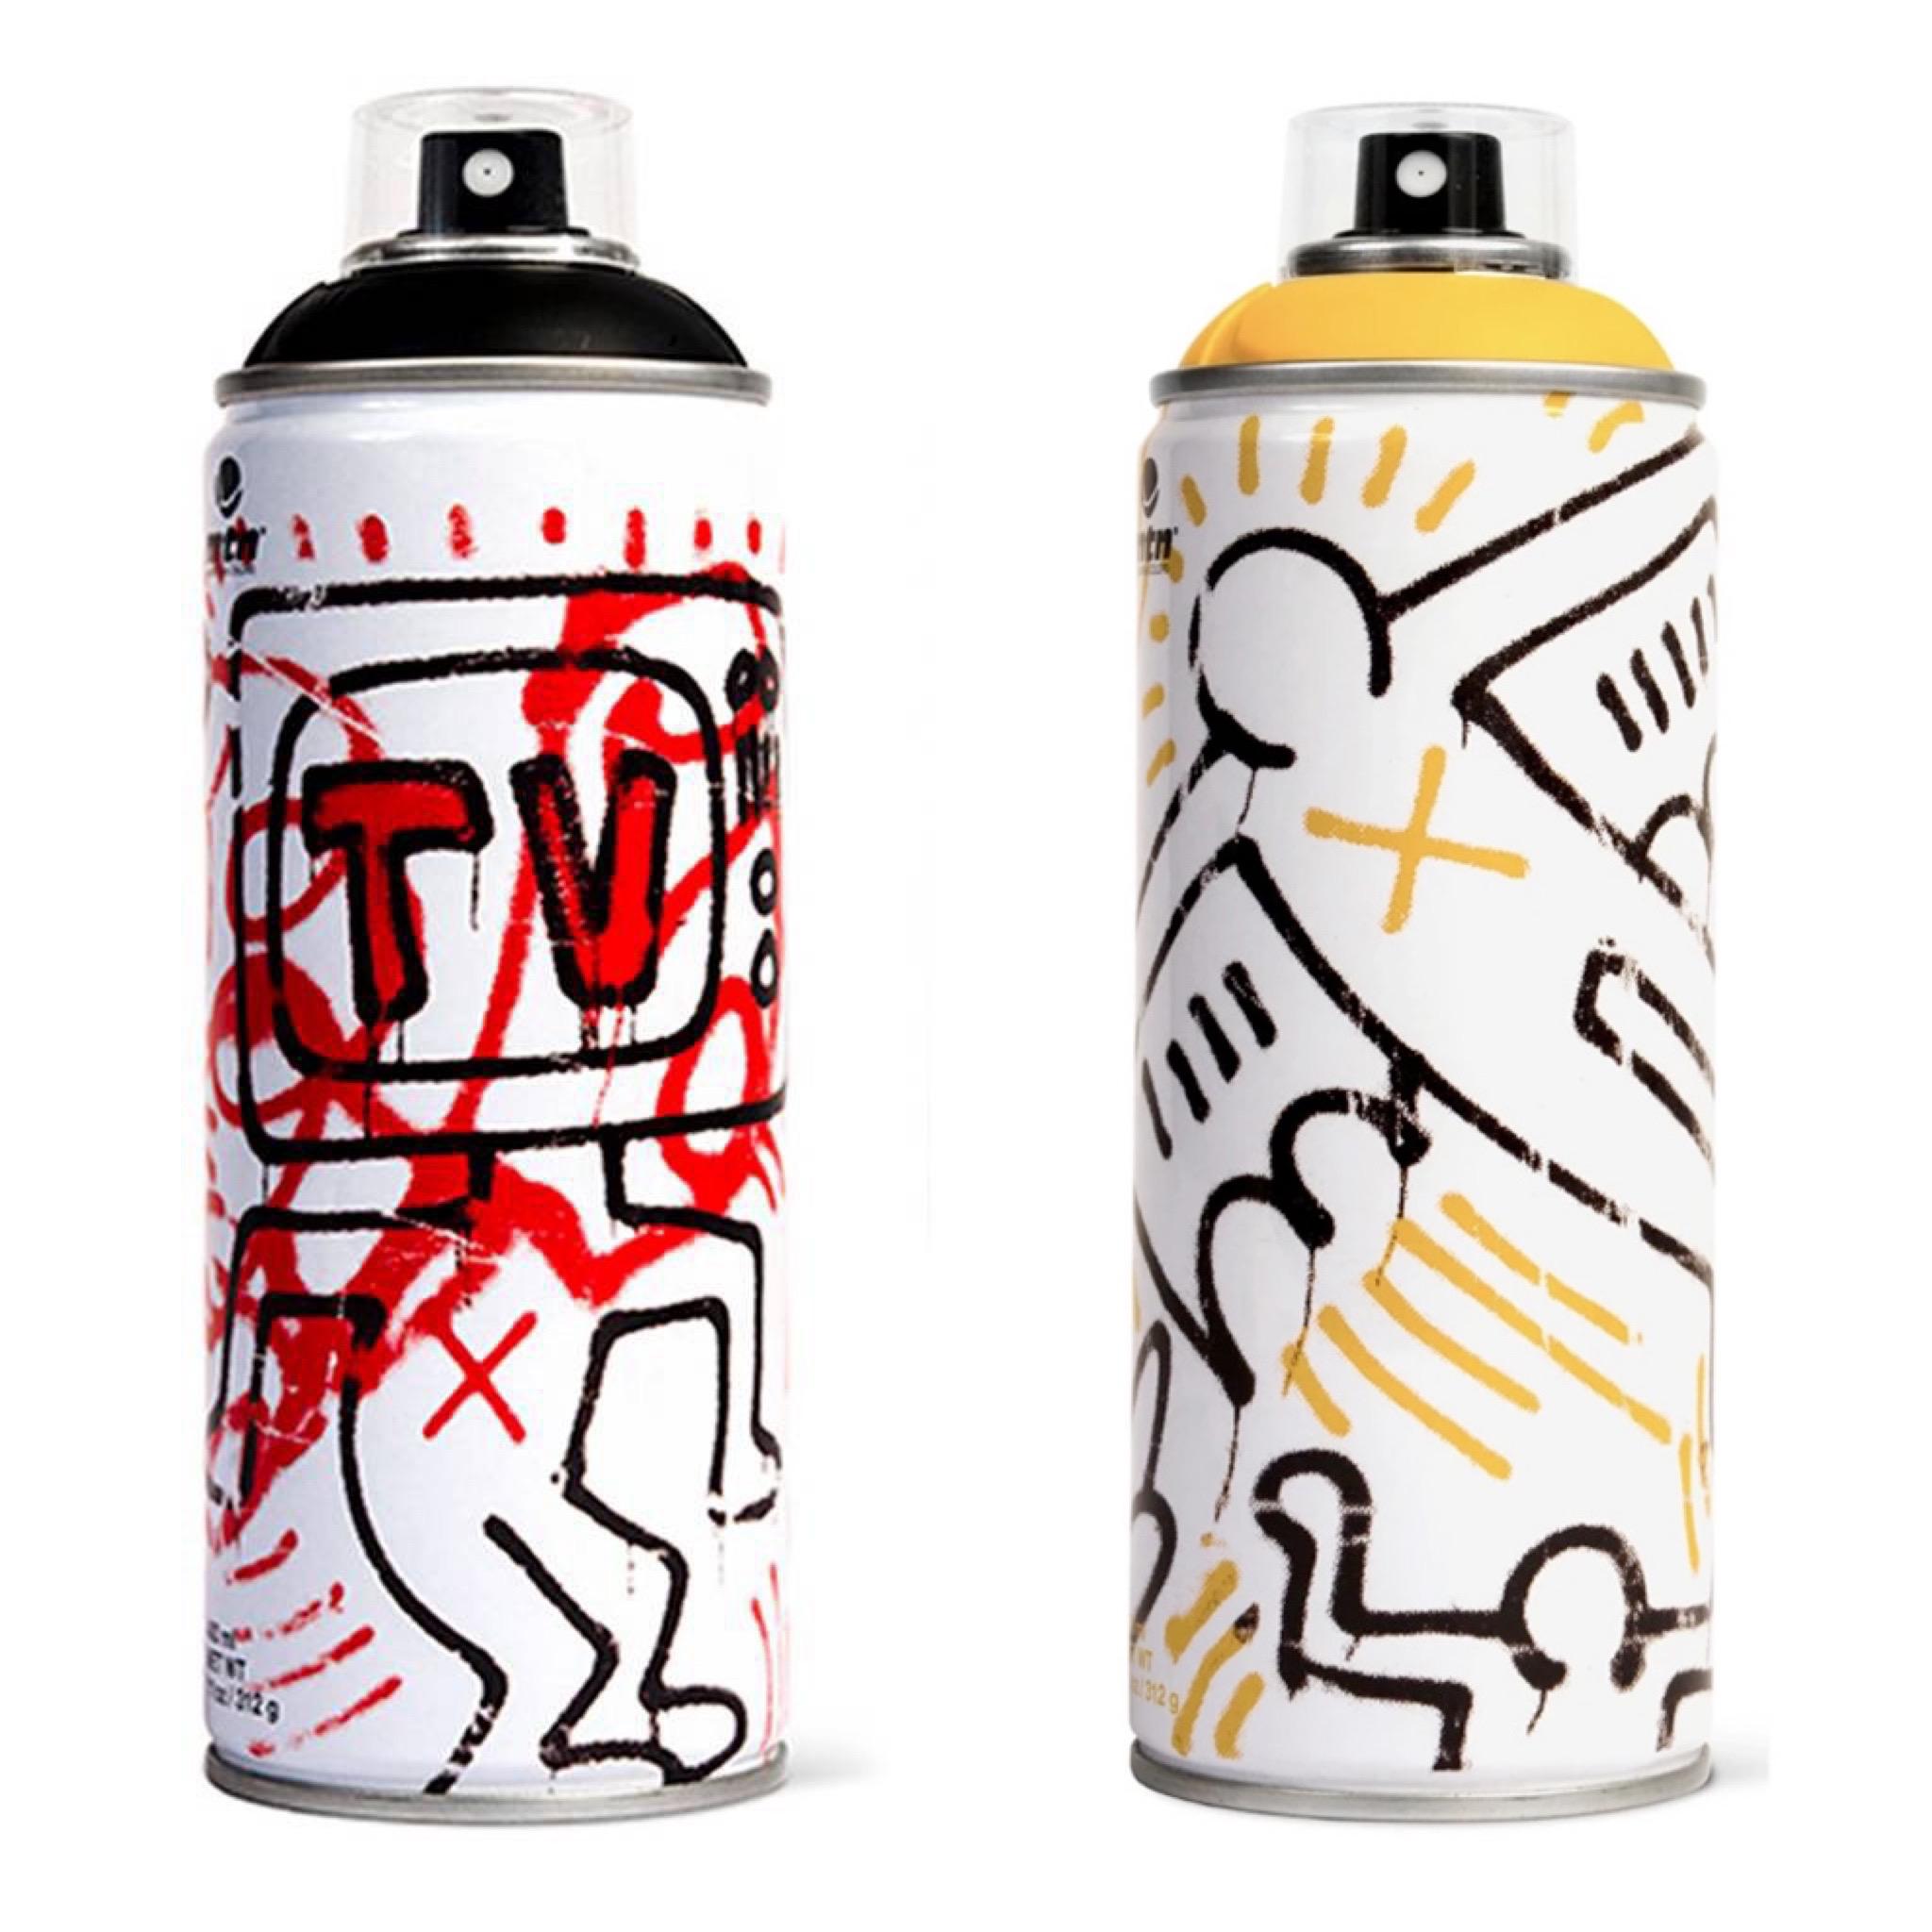 Canne à peinture en spray Keith Haring en édition limitée (set de 2) - Print de (after) Keith Haring